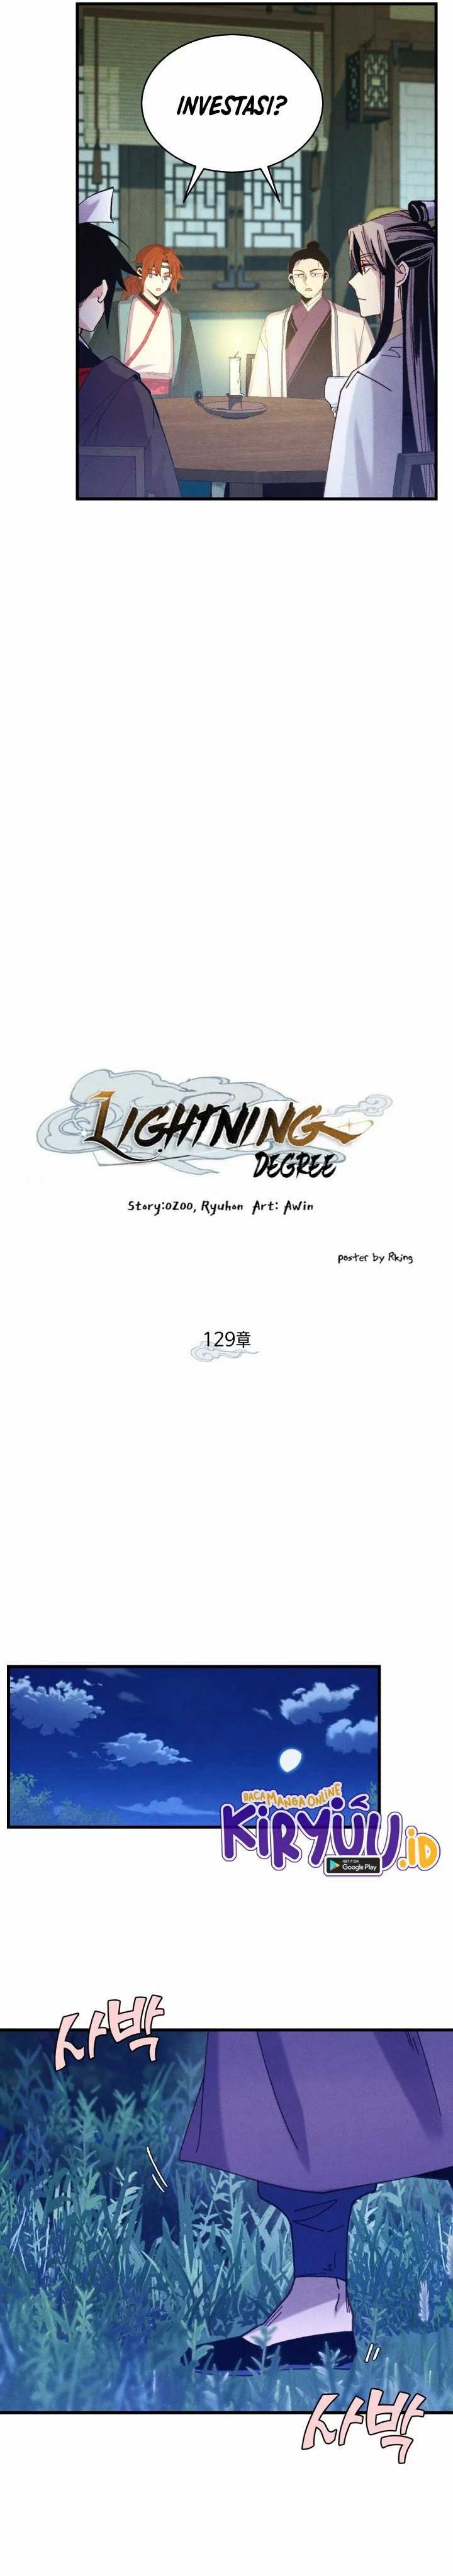 Lightning Expert (Lightning Degree) Chapter 129